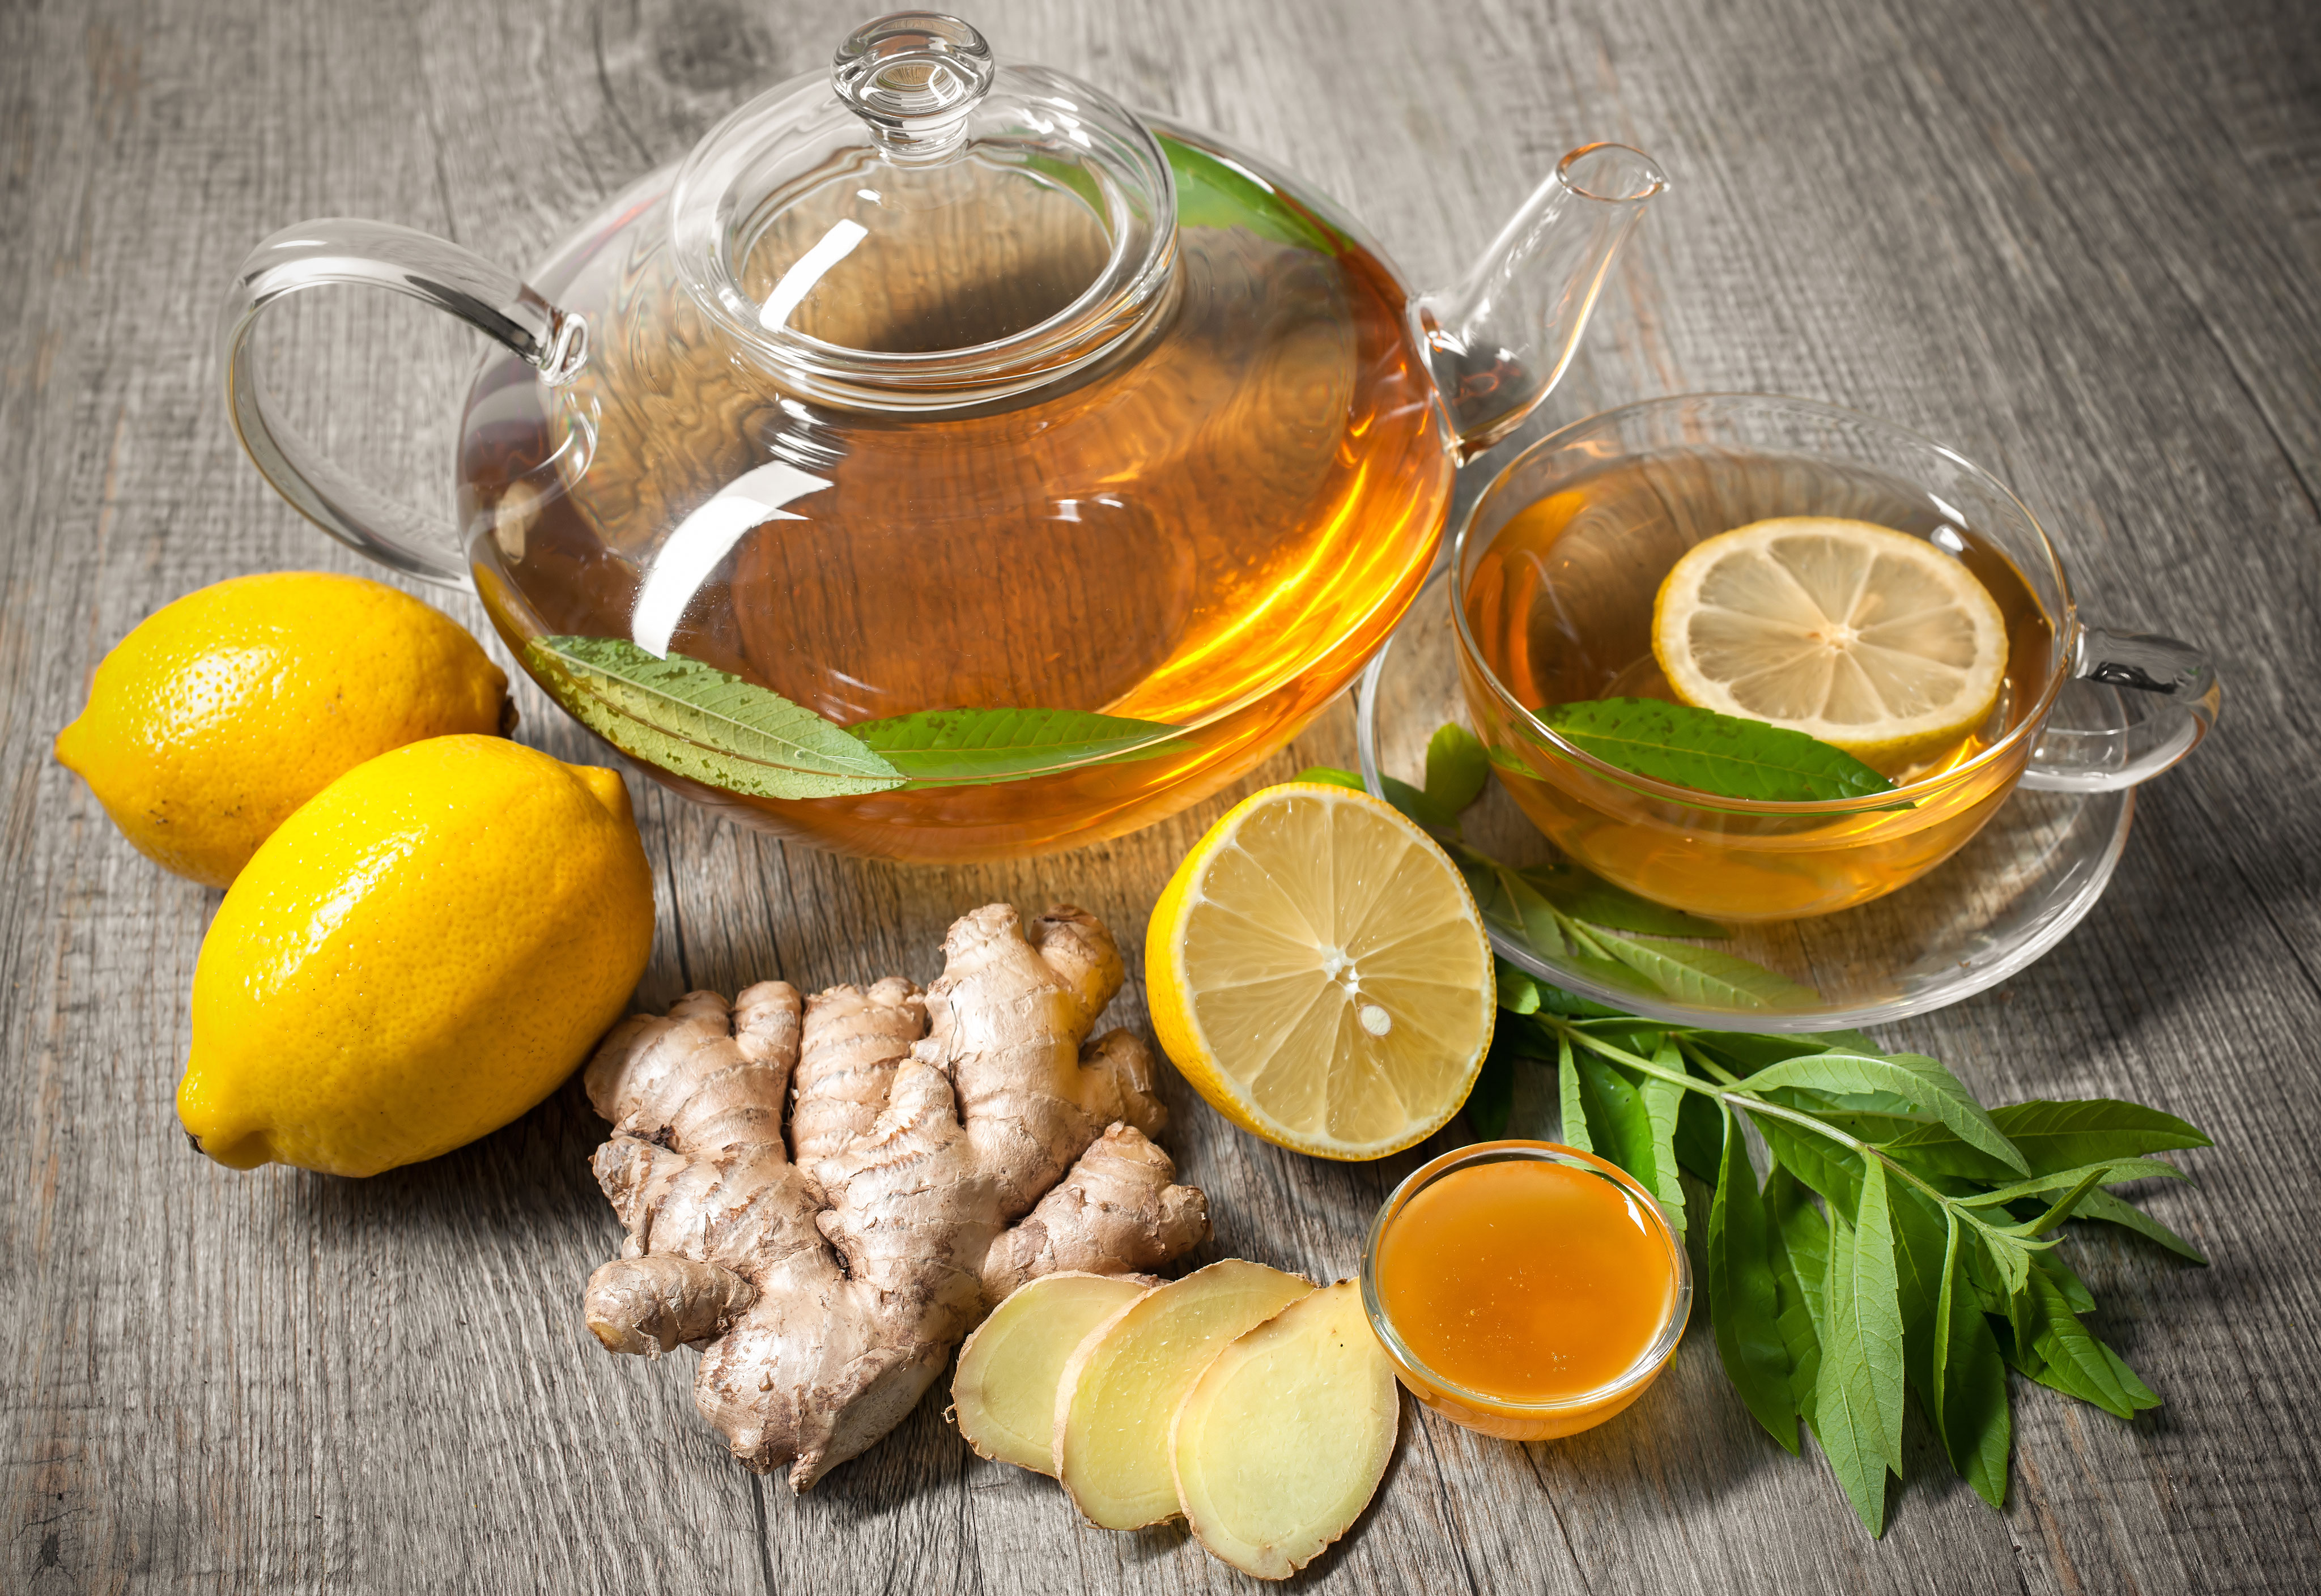 Некоторые люди любят пить зимой витамины напиток. Чай имбирь лимон мед зеленый чай. Имбирный чай. Чай с лимоном и медом. Чай с лимоном и имбирем.